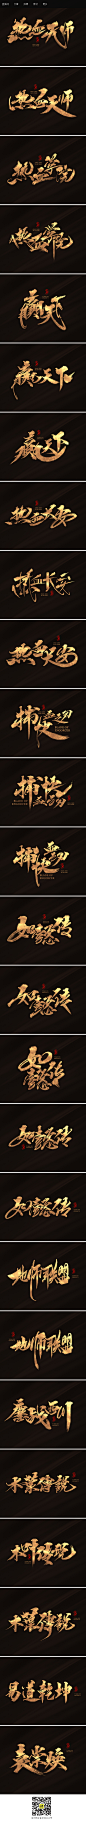 影剧片名_字体传奇网-中国首个字体品牌设计师交流网 #字体#